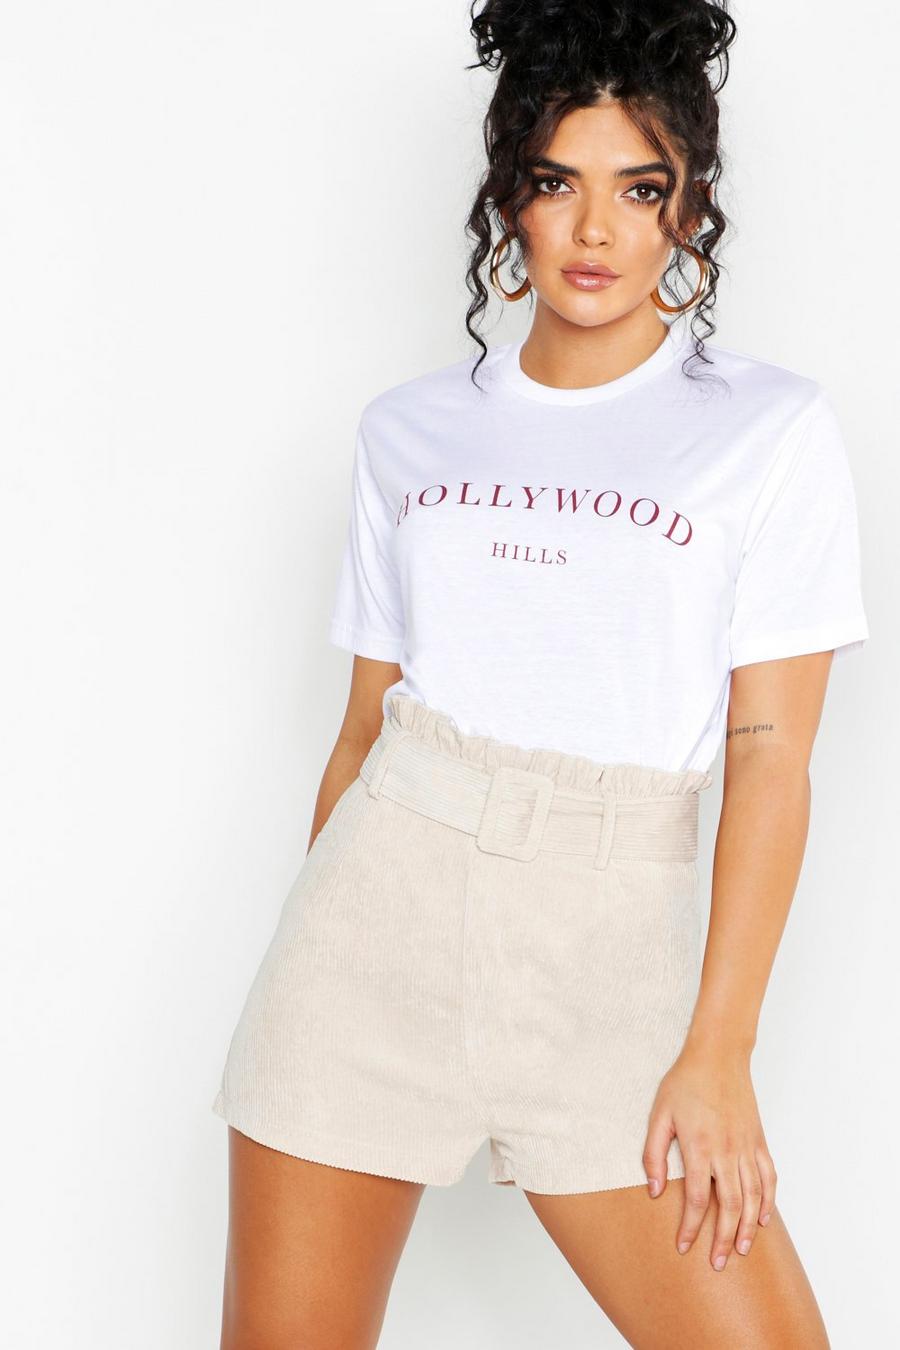 Camiseta con estampado de eslogan “Hollywood” image number 1